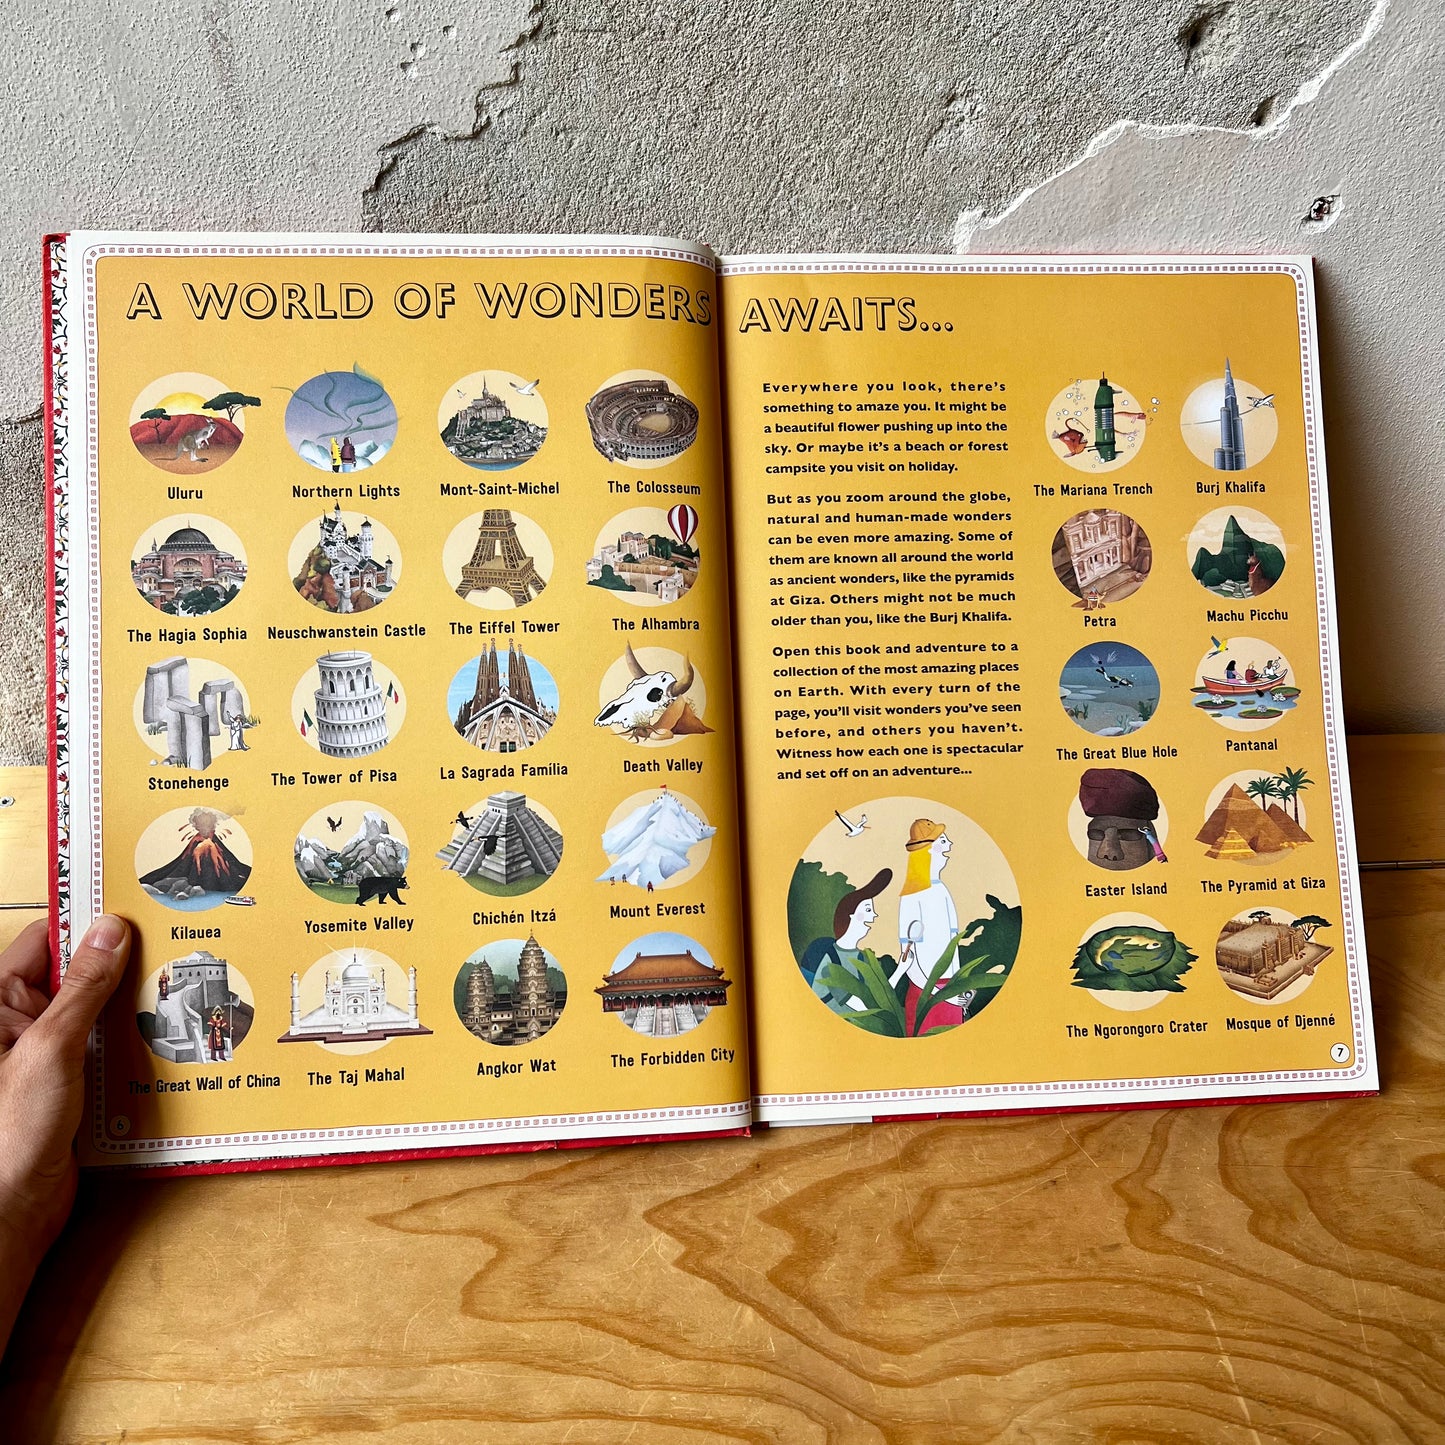 Atlas of Adventures: Wonders of the World – Ben Handicott, Lucy Letherland